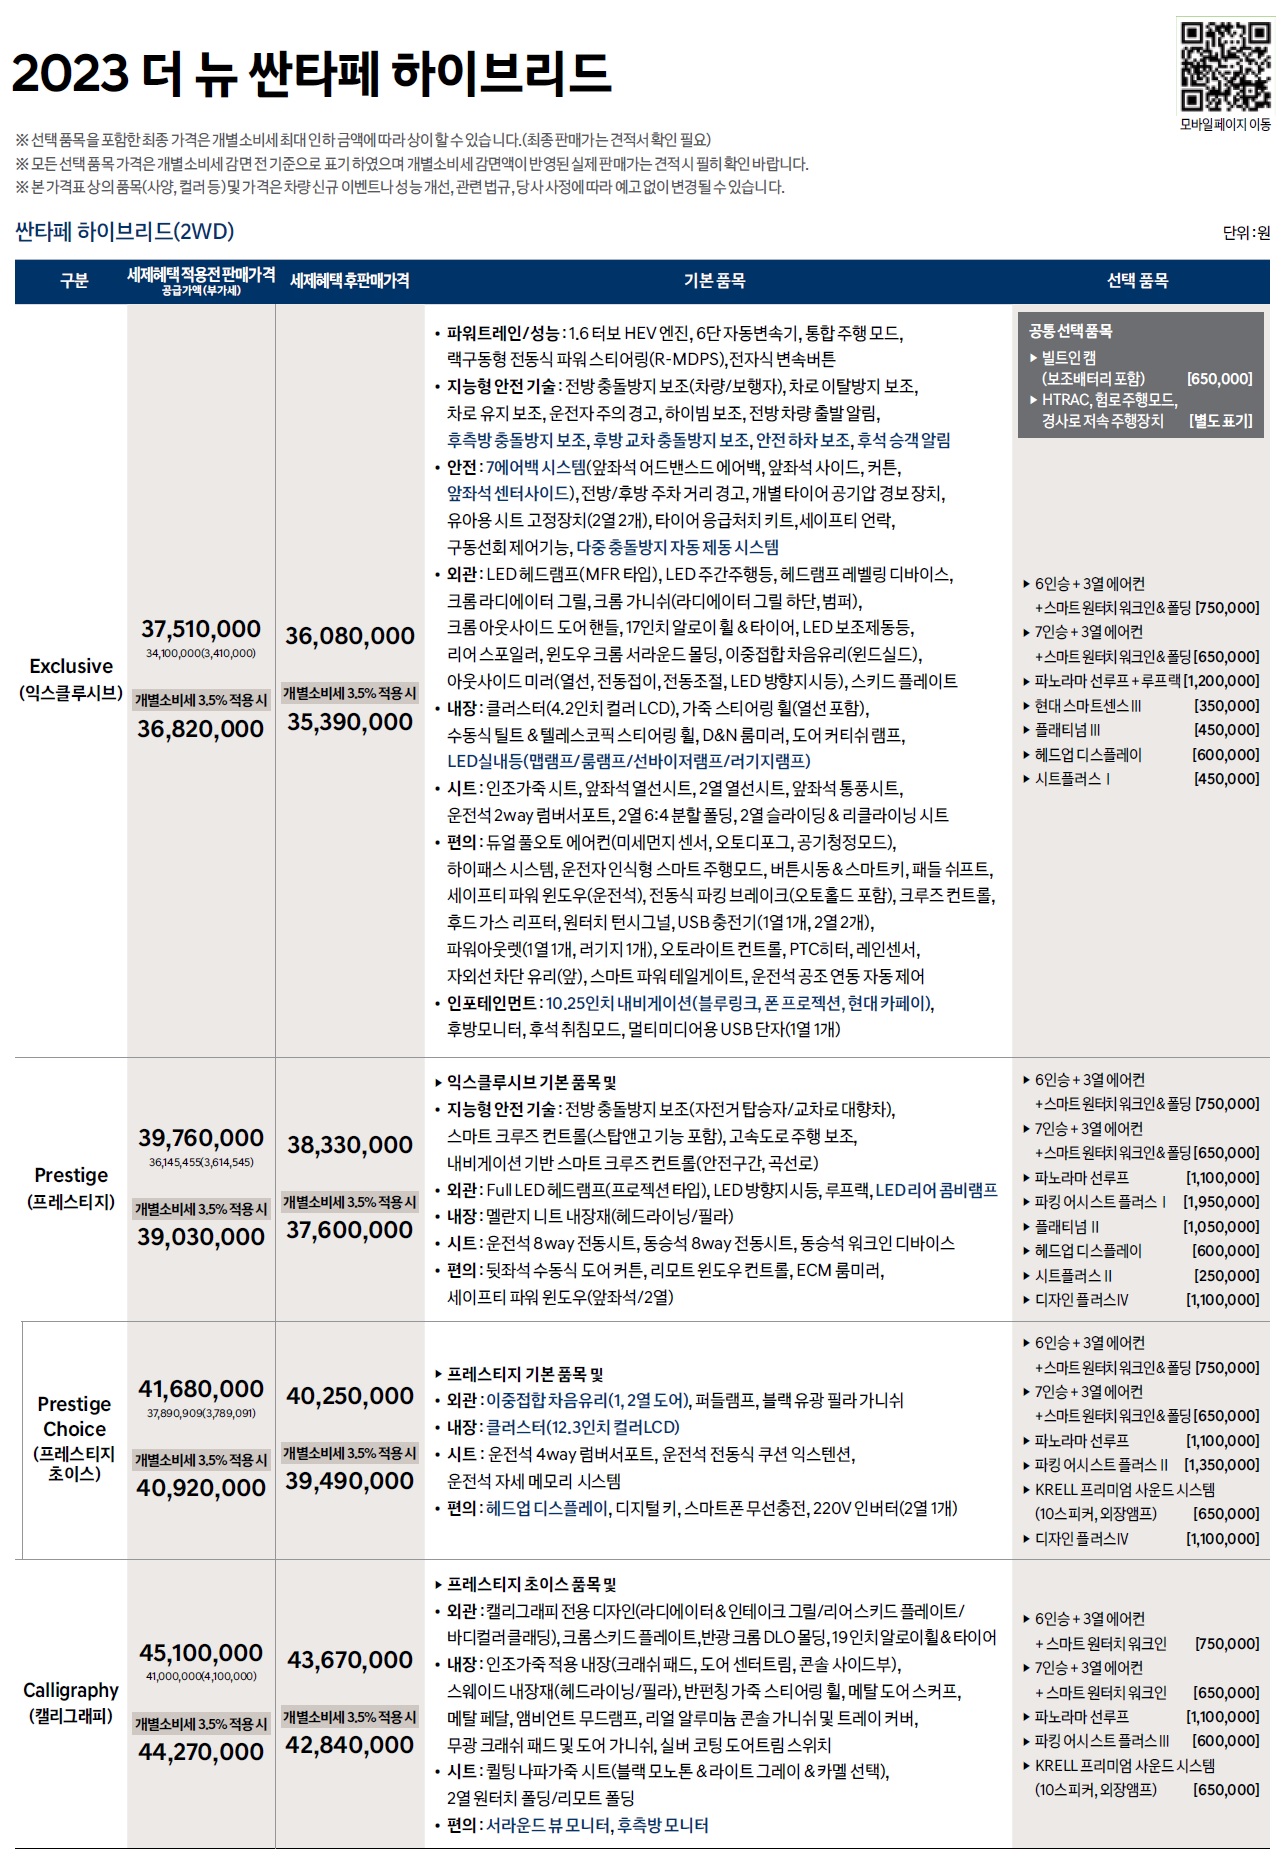 싼타페 하이브리드 가격표 - 2022년 09월 (2023년형) -1.jpg